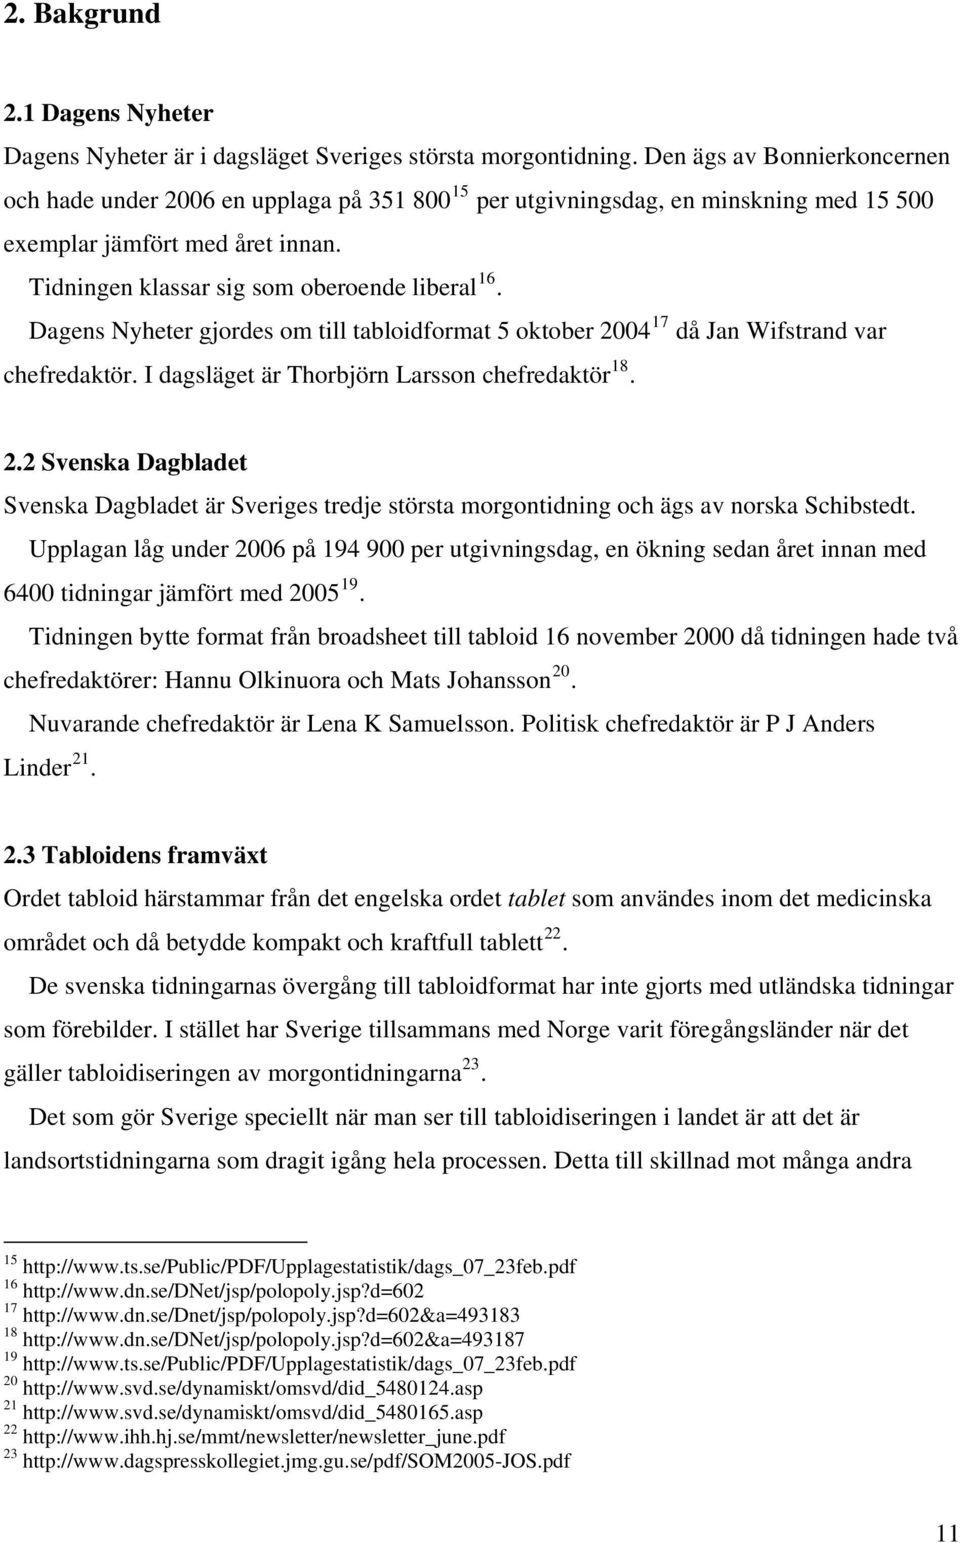 Dagens Nyheter gjordes om till tabloidformat 5 oktober 2004 17 då Jan Wifstrand var chefredaktör. I dagsläget är Thorbjörn Larsson chefredaktör 18. 2.2 Svenska Dagbladet Svenska Dagbladet är Sveriges tredje största morgontidning och ägs av norska Schibstedt.